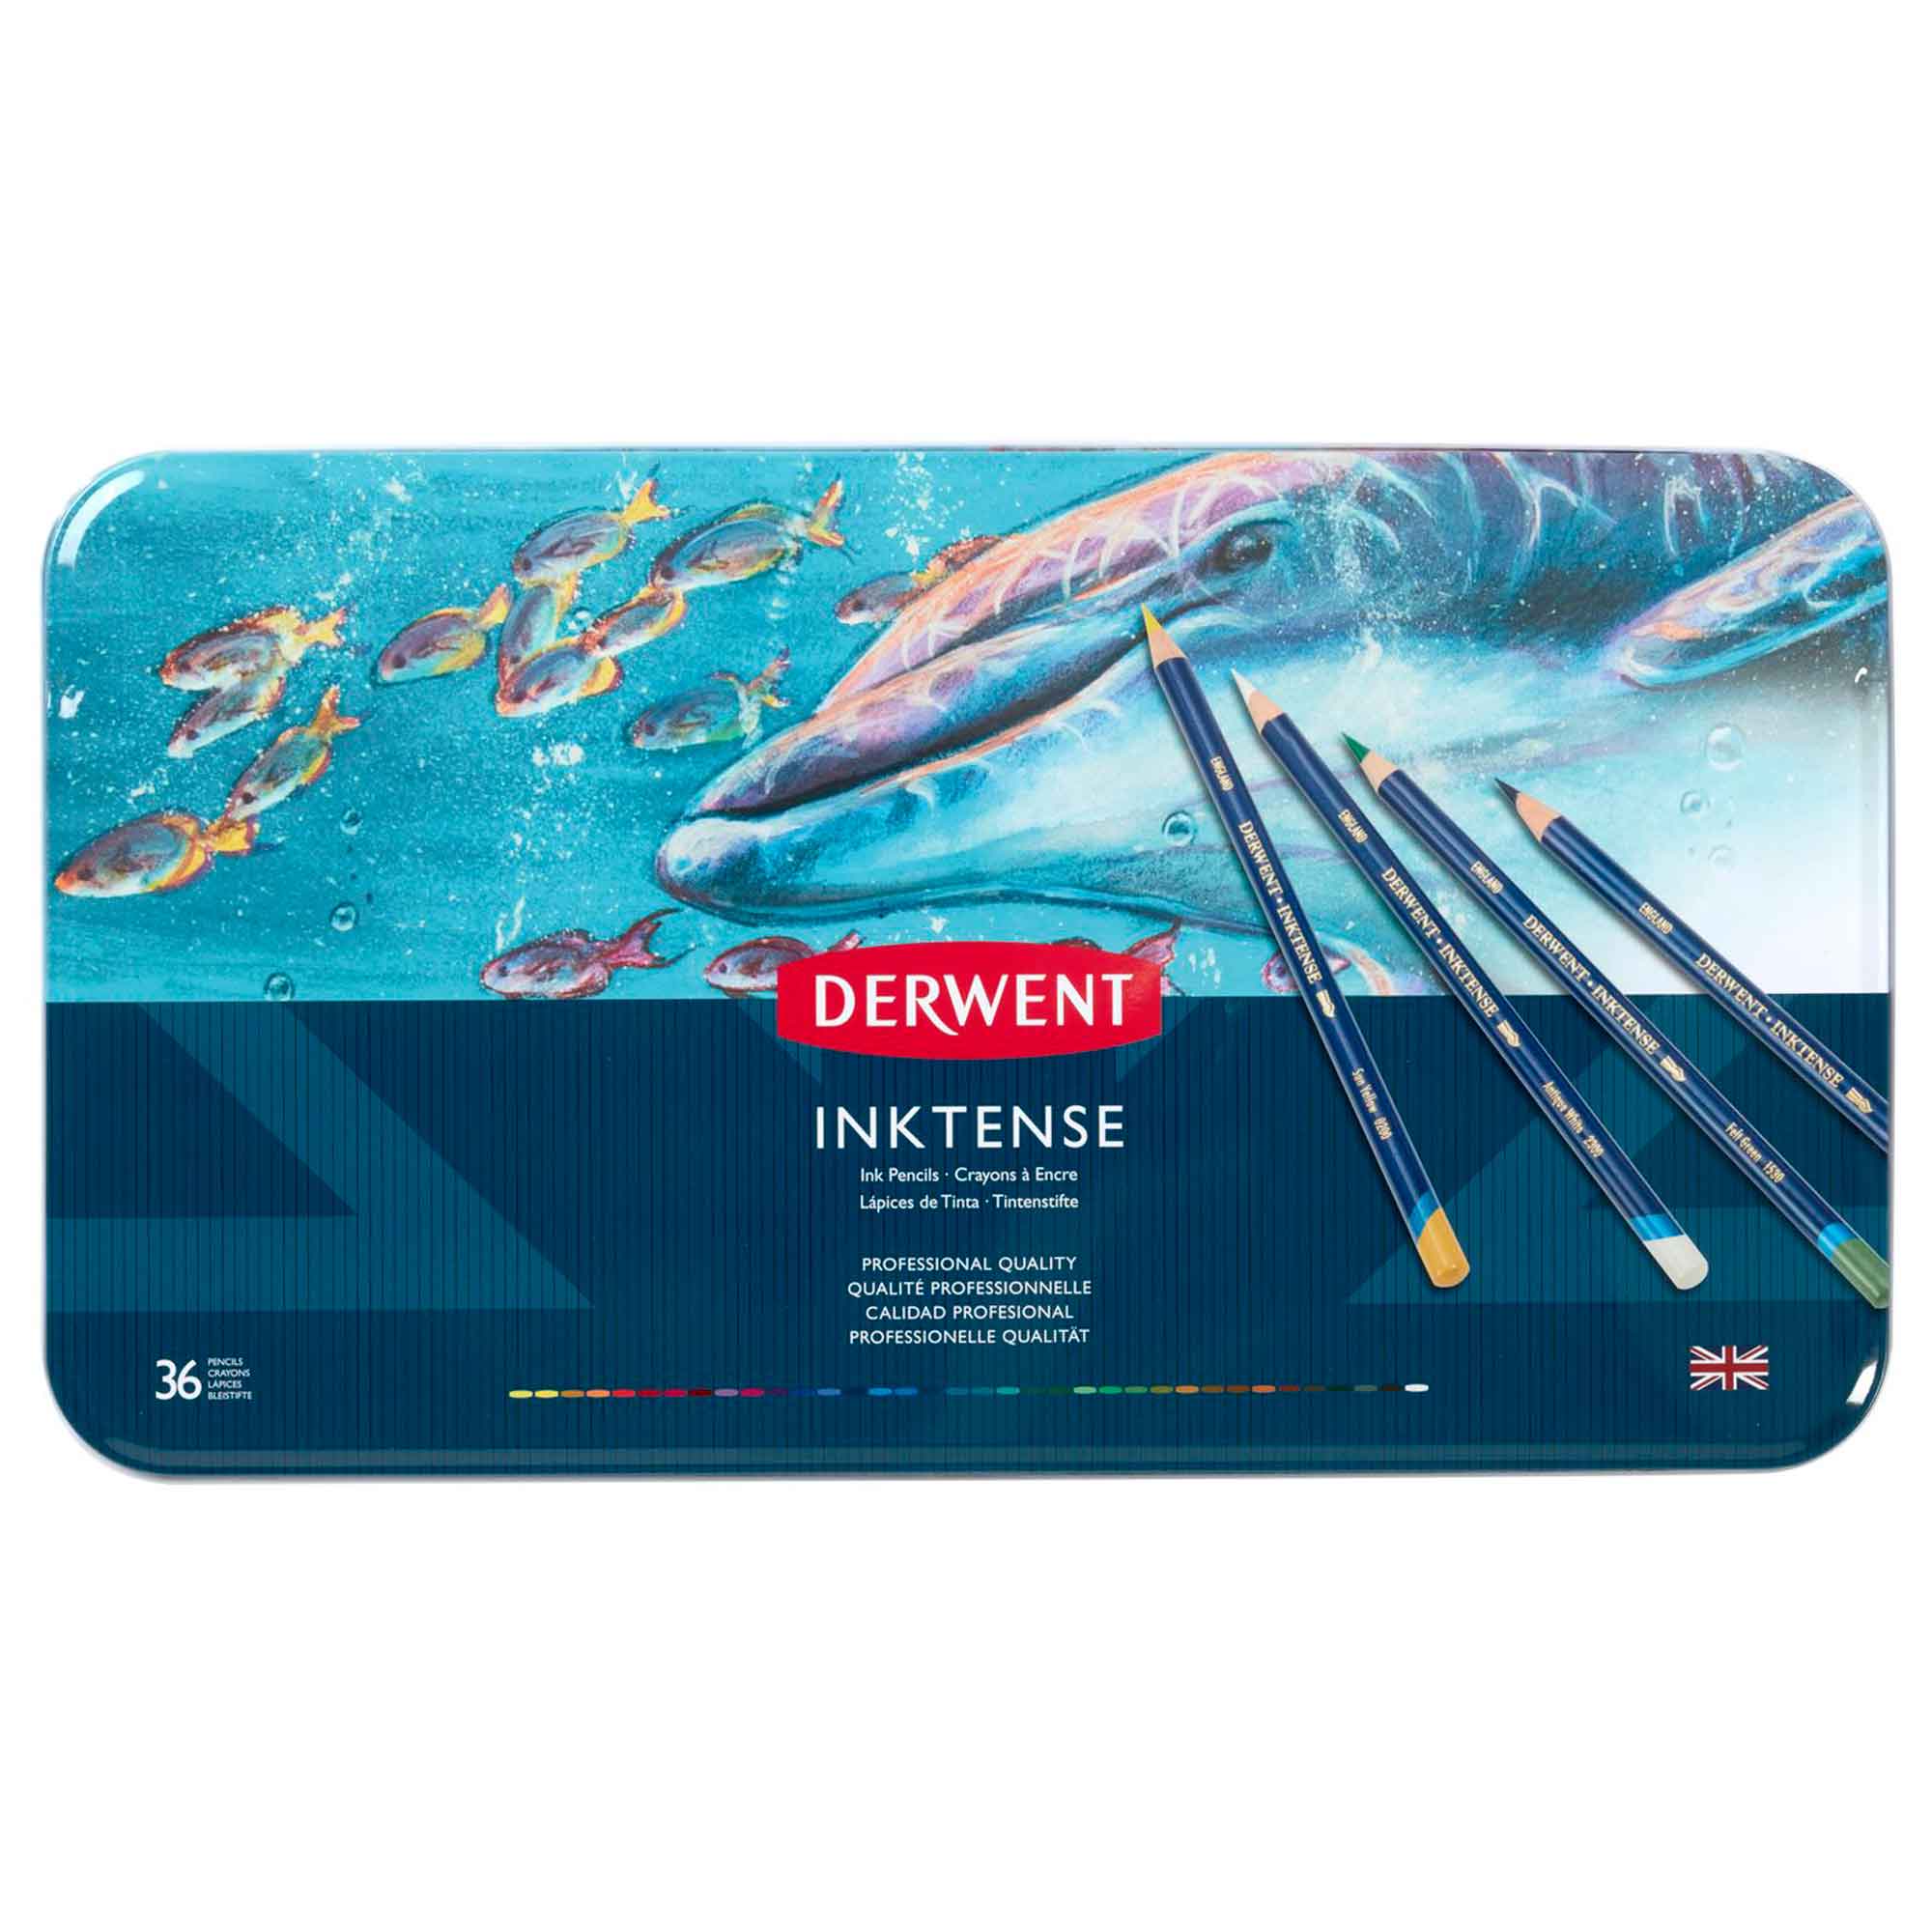 Derwent Inktense Pencils - Set of 36